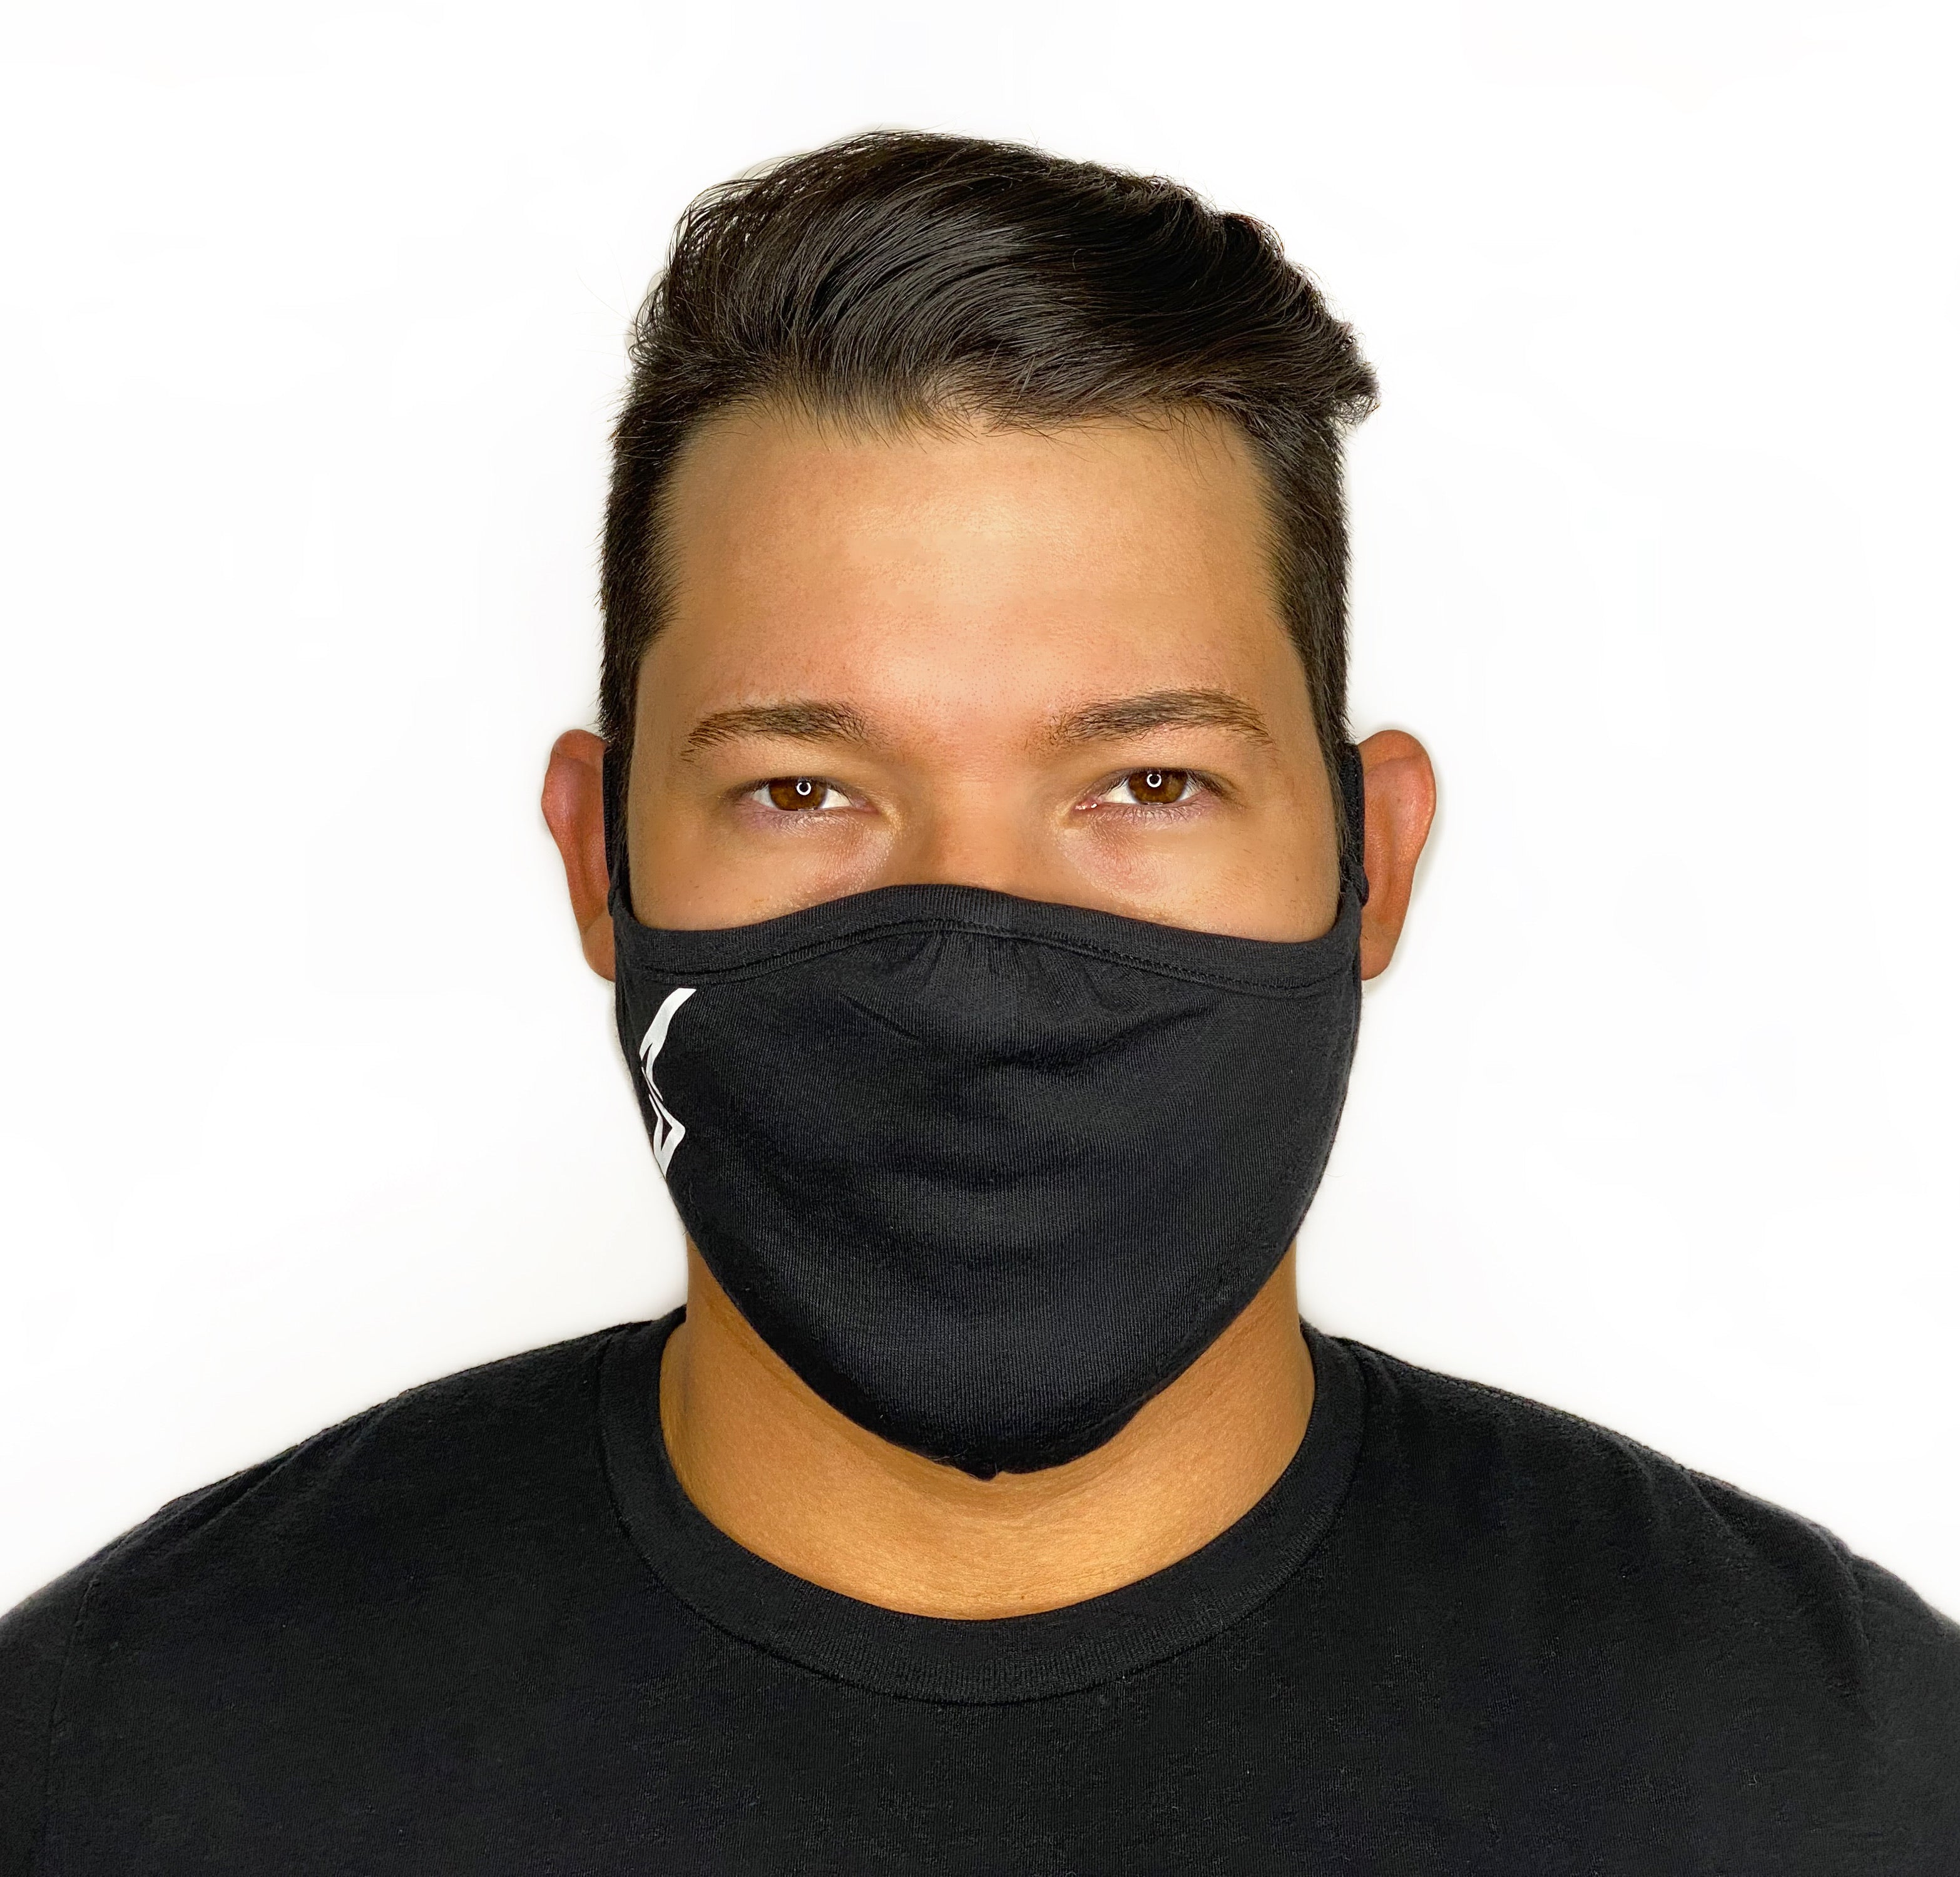 Shurtlive Bolt Face Mask-Black/White